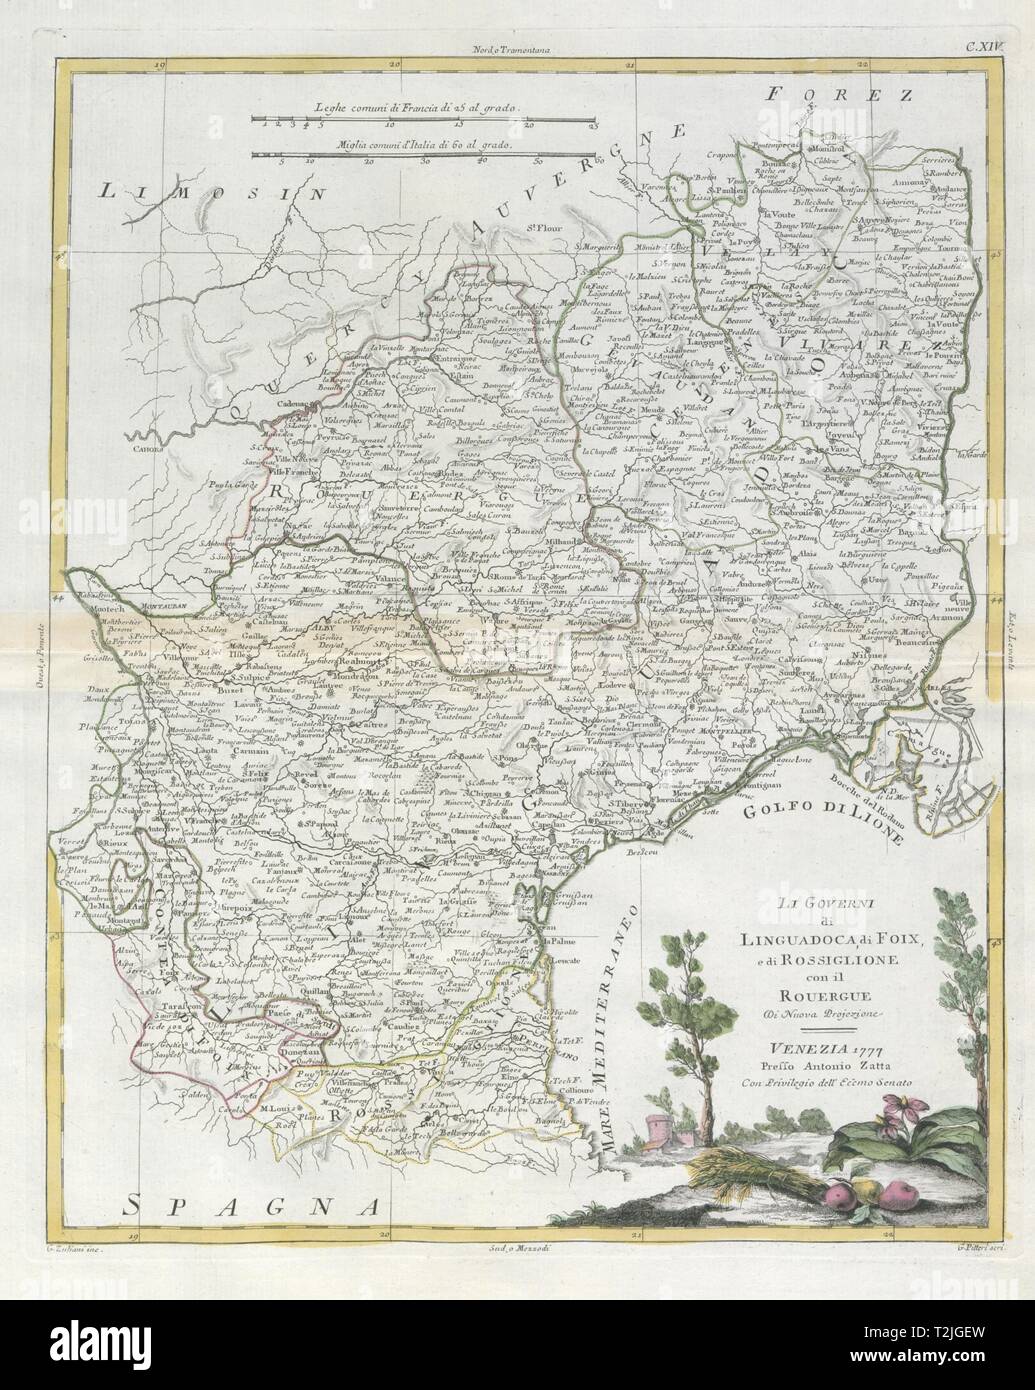 'Li Governi di Linguadoca… di Rossiglione…' Languedoc Roussillon. ZATTA 1779 map Stock Photo